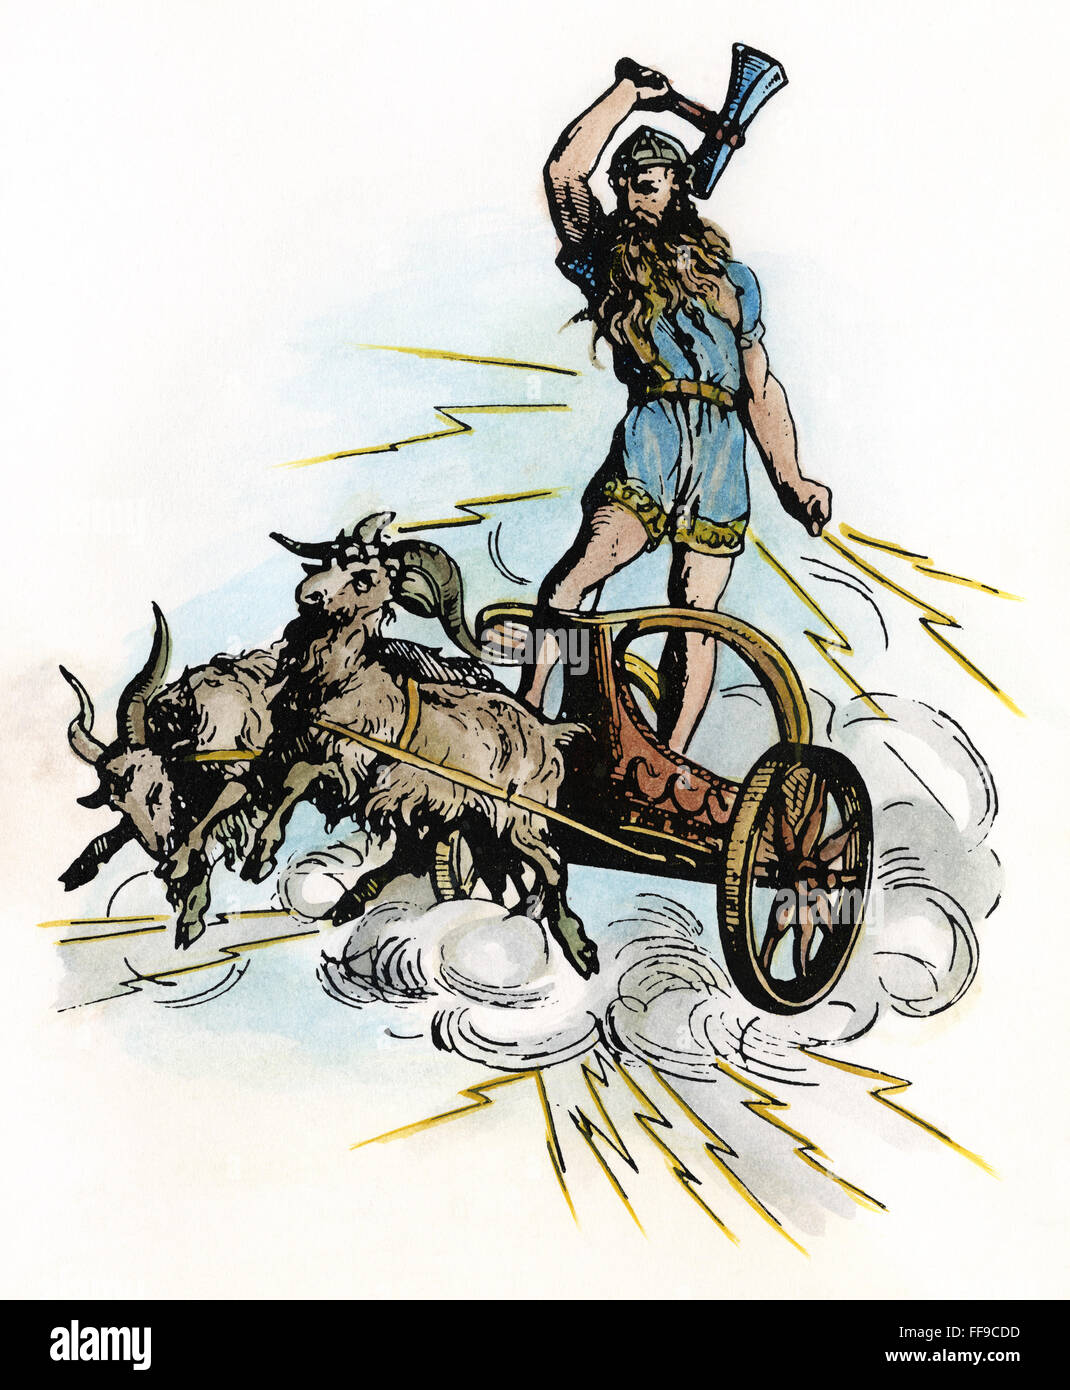 La mythologie nordique : Thor. Nordic-Germanic /n dieu de la guerre et de tonnerre. Illustration, 19e siècle. Banque D'Images